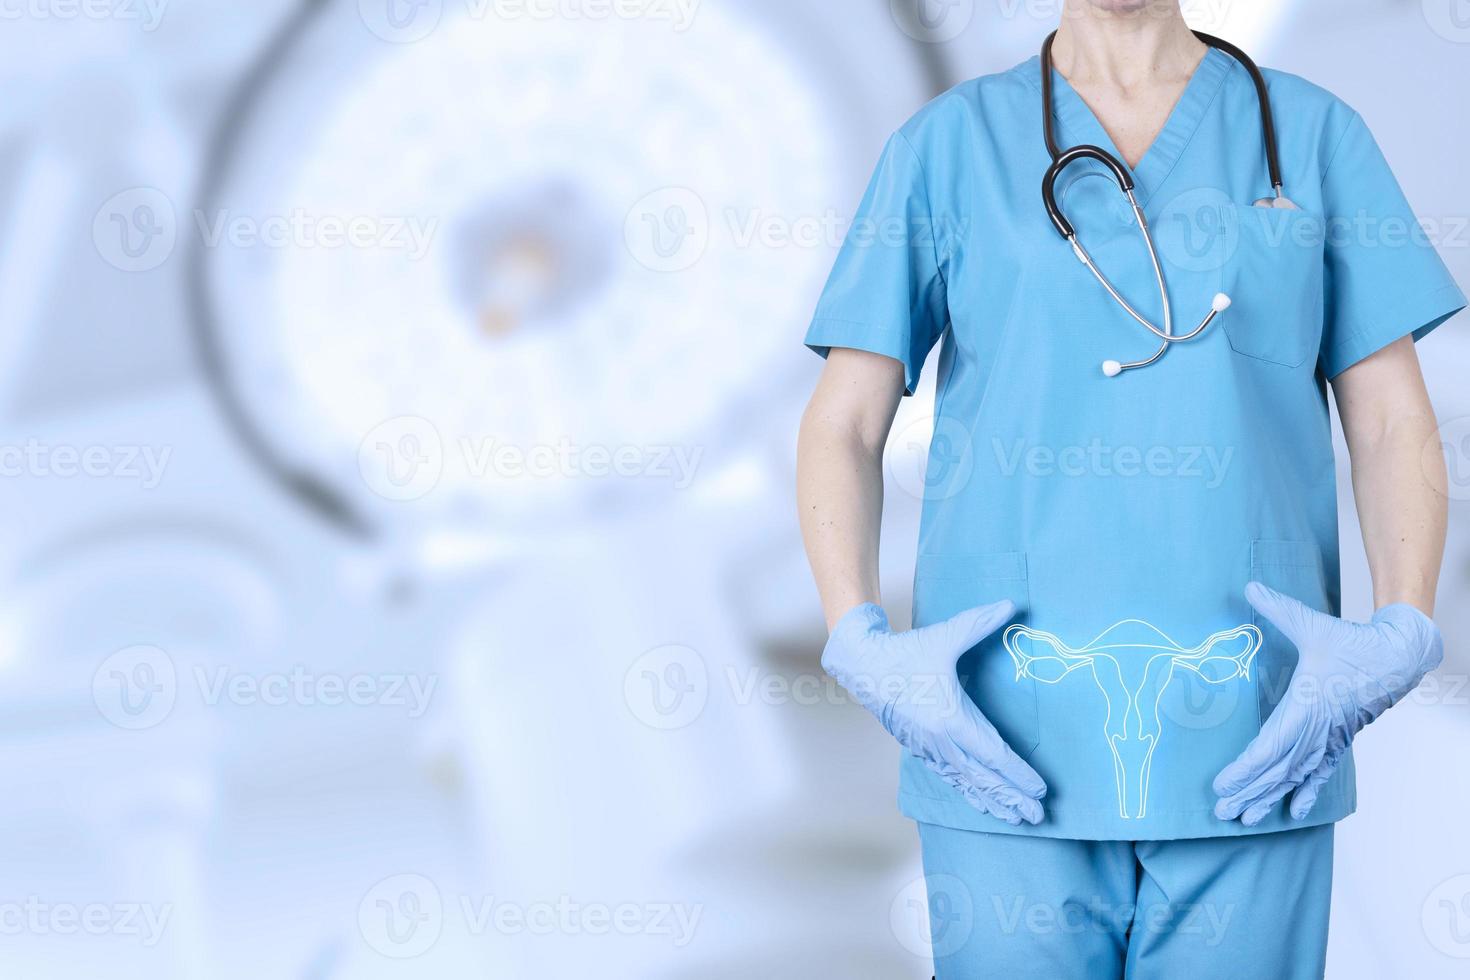 ginecólogo con uniforme médico y modelo del sistema reproductivo de una mujer, el útero, al nivel de los huesos pélvicos de una mujer, sobre un fondo borroso de un consultorio ginecológico. foto